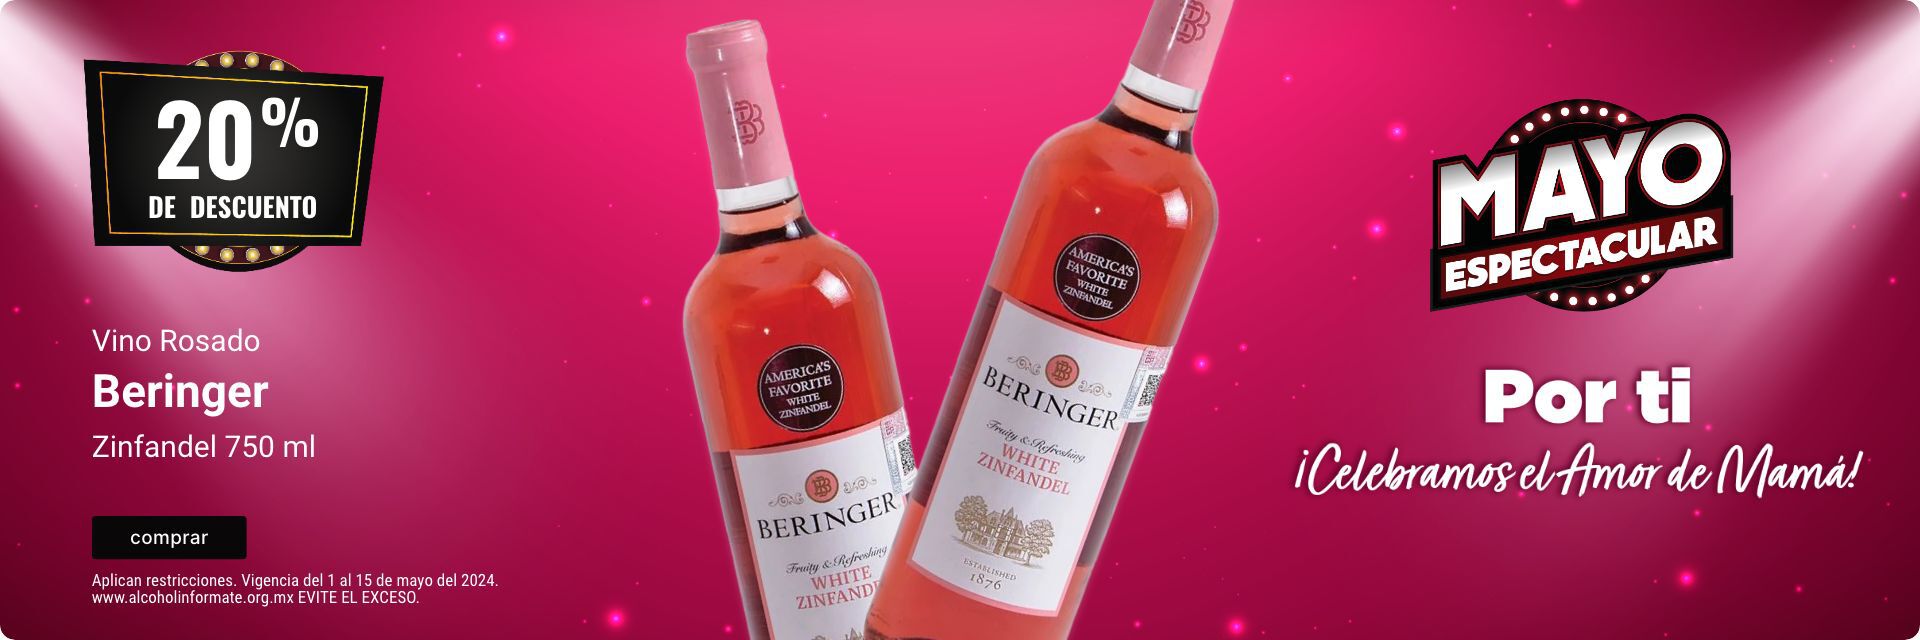 20% de descuento en vino rosado Beringer